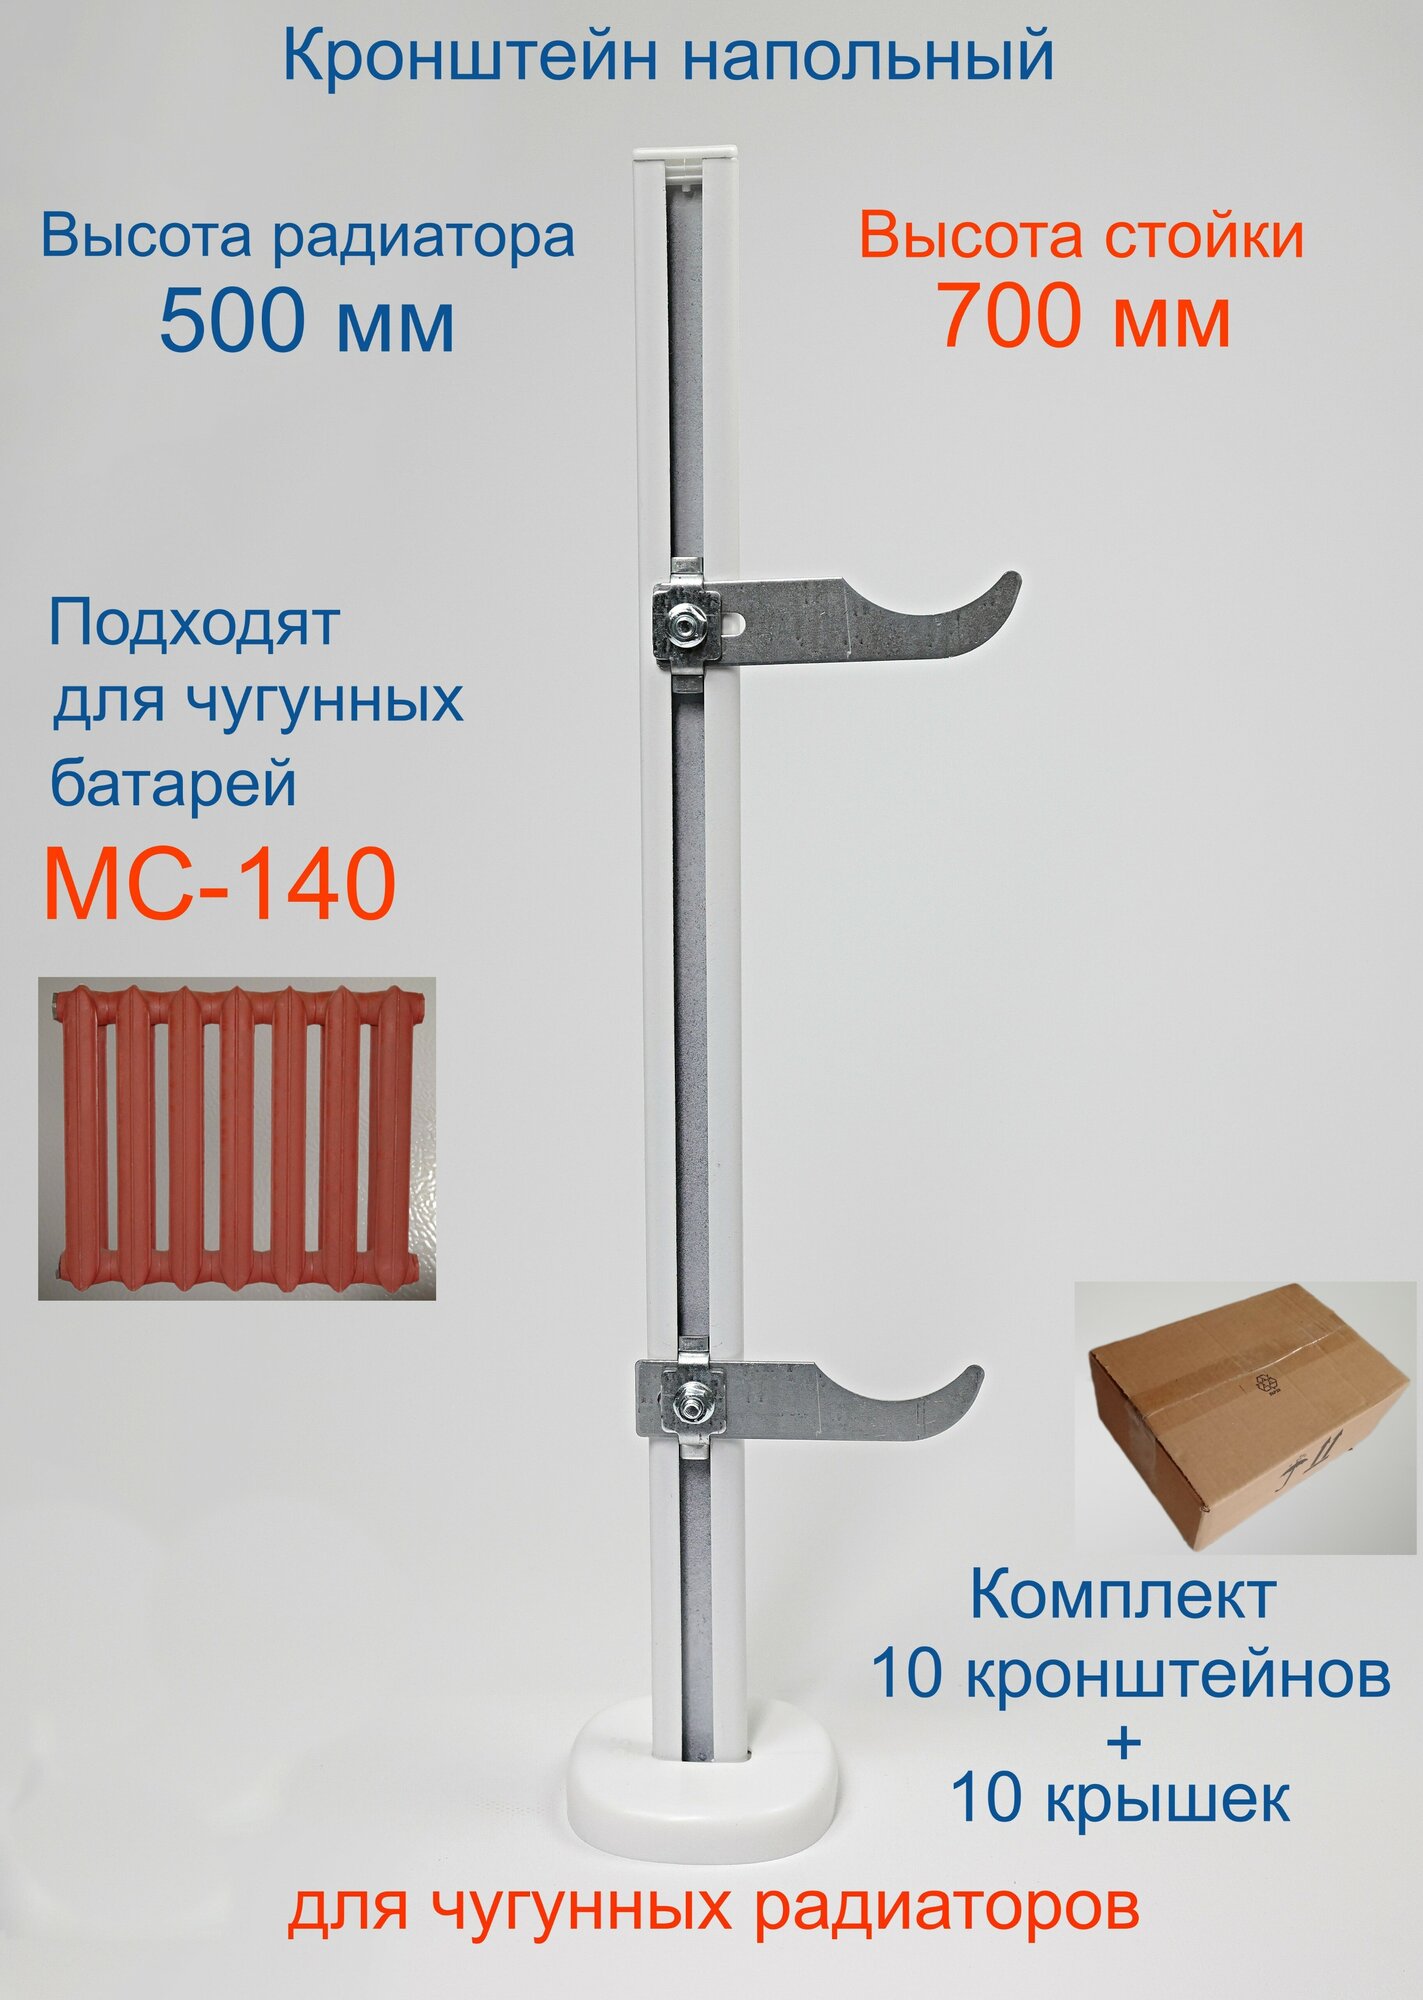 Кронштейн напольный регулируемый Кайрос KHZ3.70 для чугунных радиаторов высотой 500 мм